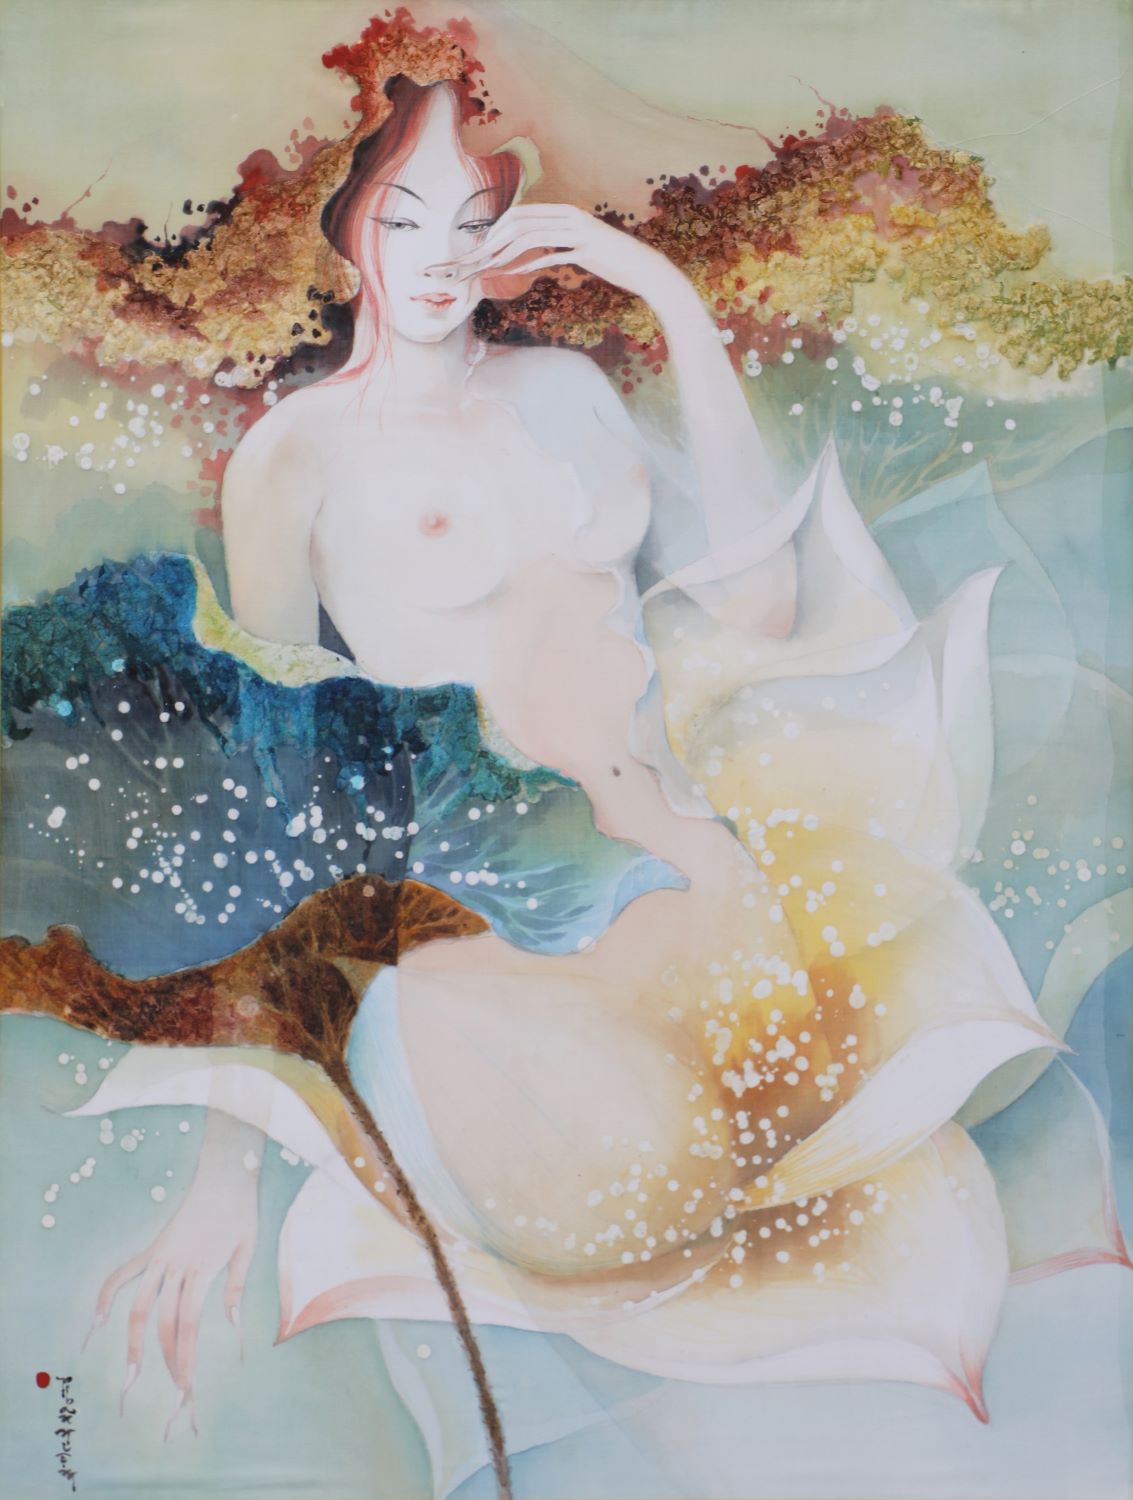 Lotus Lady XI - Vietnamese Watercolor Painting on Silk by Artist Phan Niem